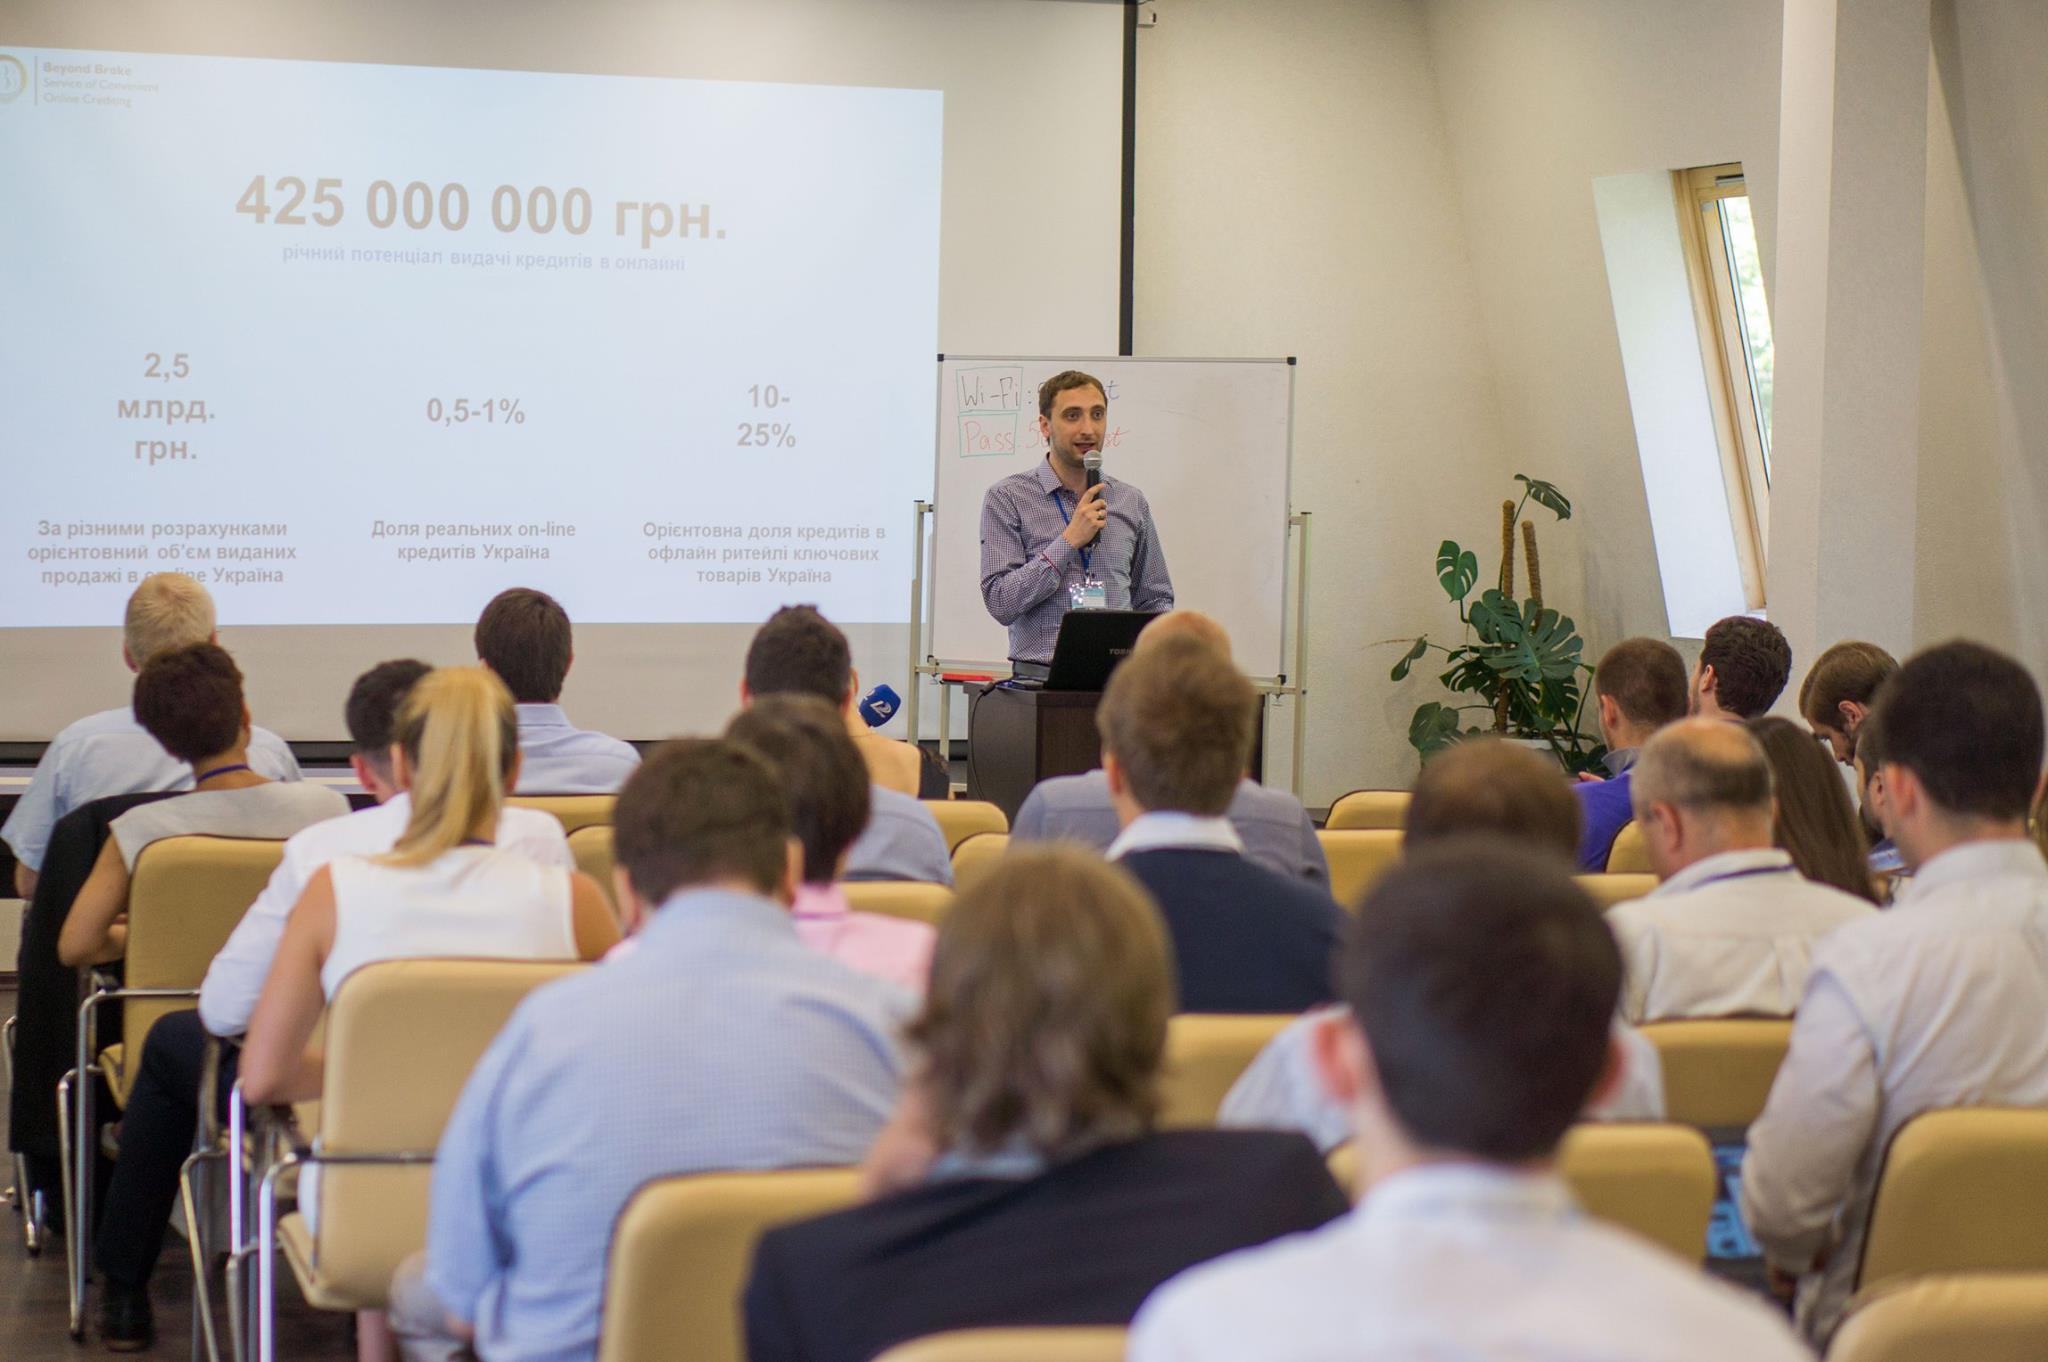 Seed Forum состоялся в Одессе впервые